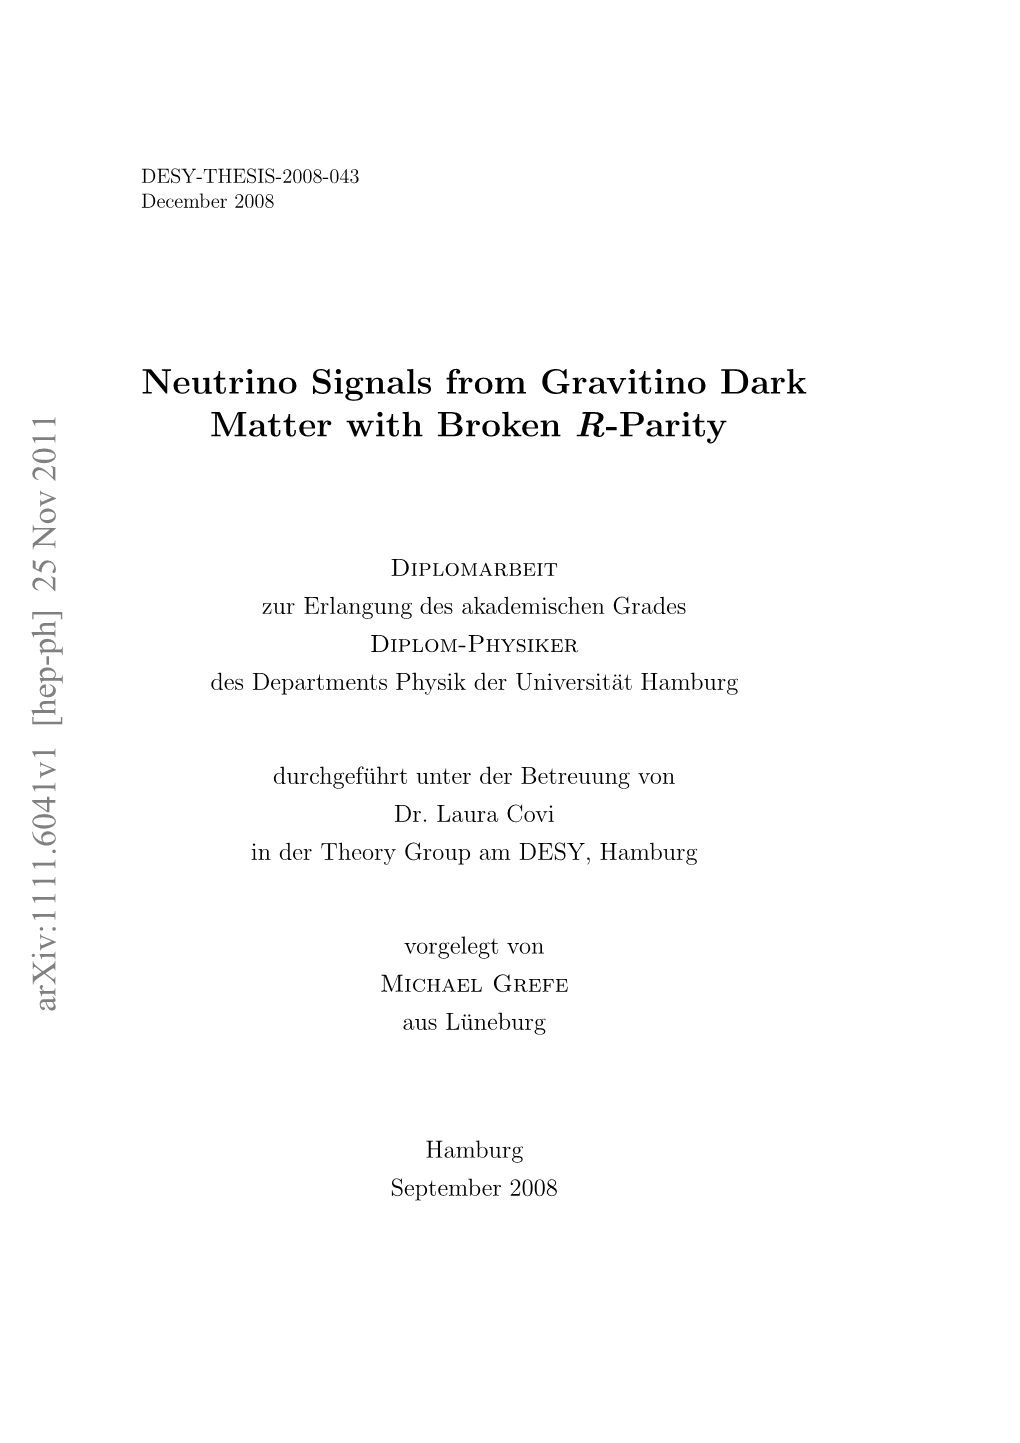 Neutrino Signals from Gravitino Dark Matter with Broken R-Parity